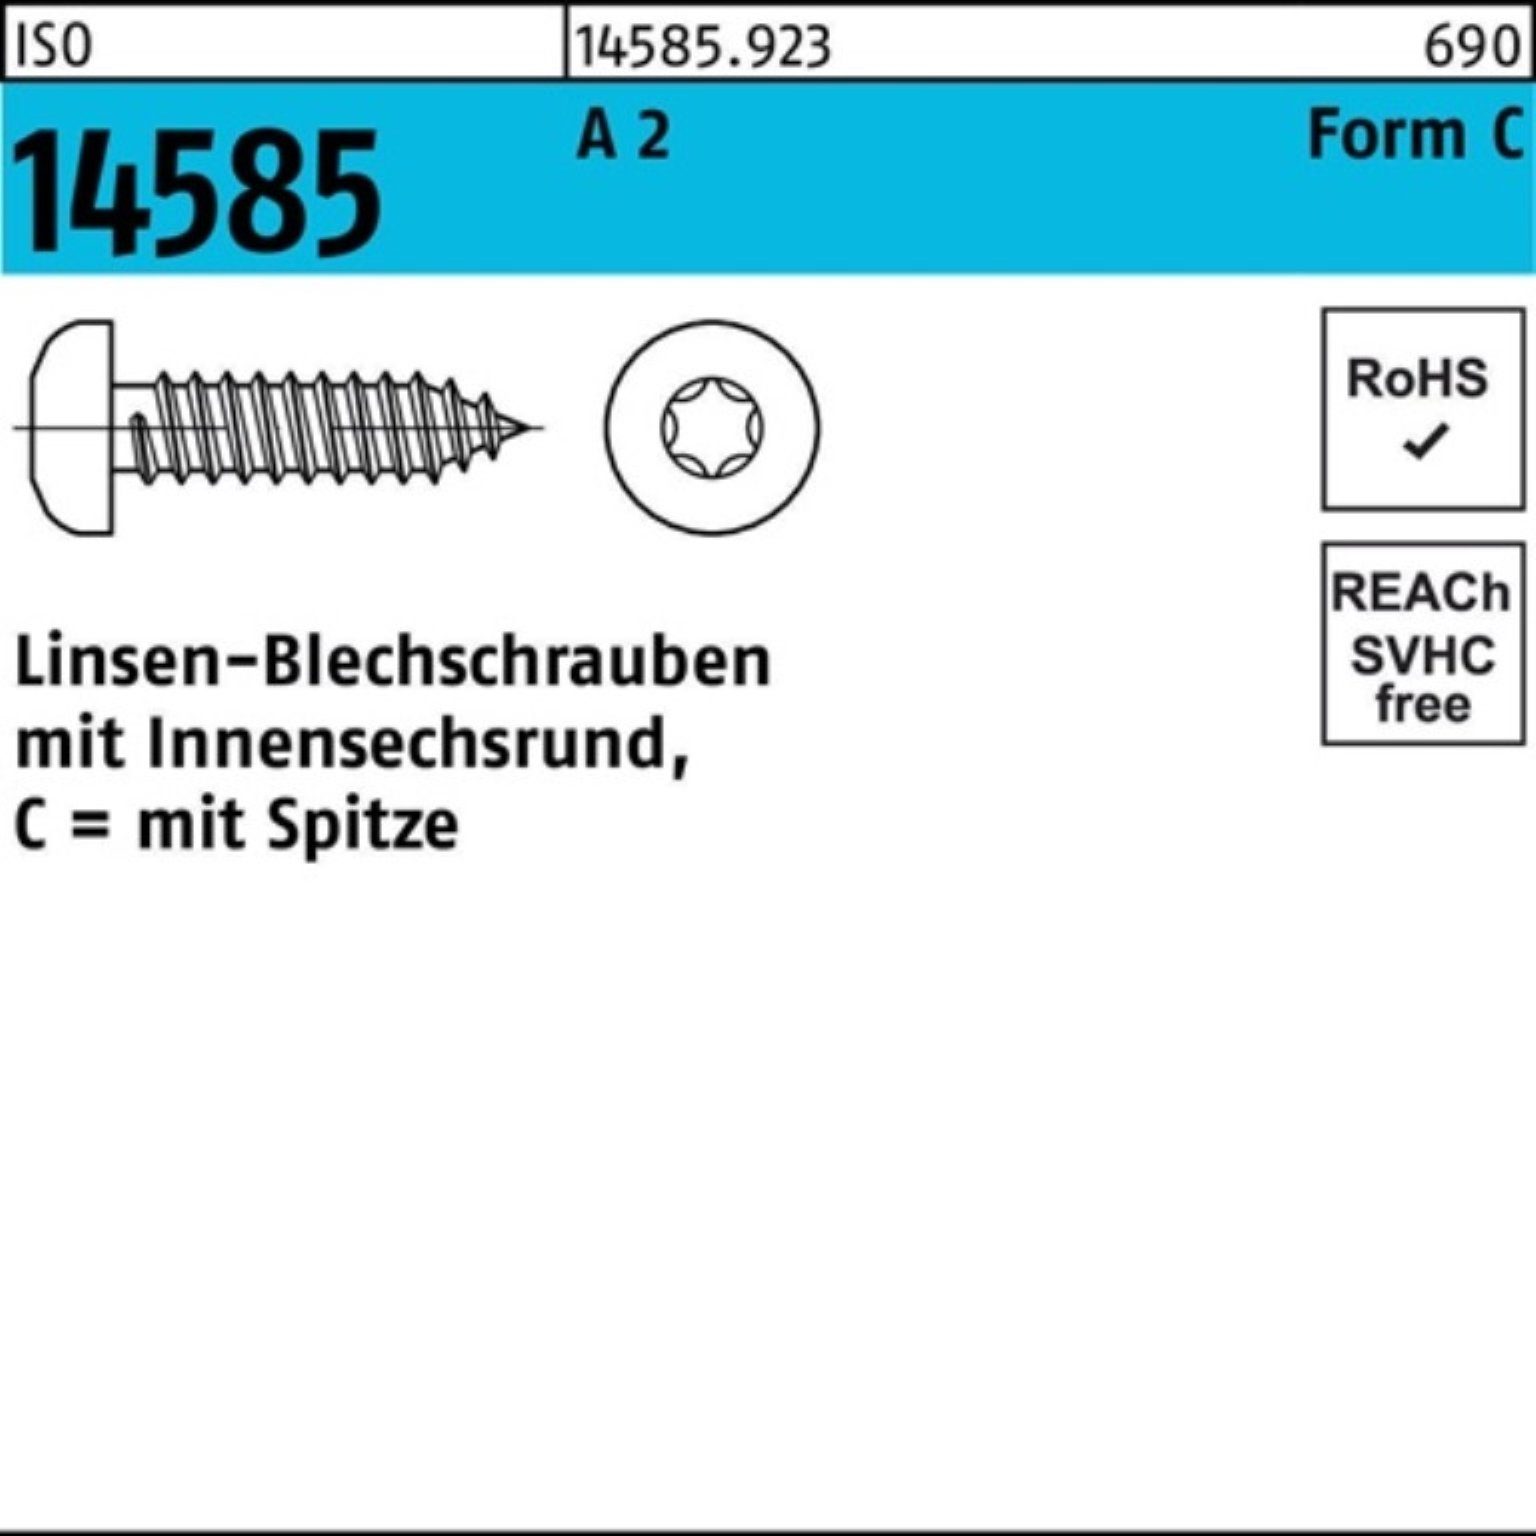 Pack 5,5x Blechschraube Reyher 2 250er 70 -C 14585 250 St A T25 ISO ISR Linsenblechschraube